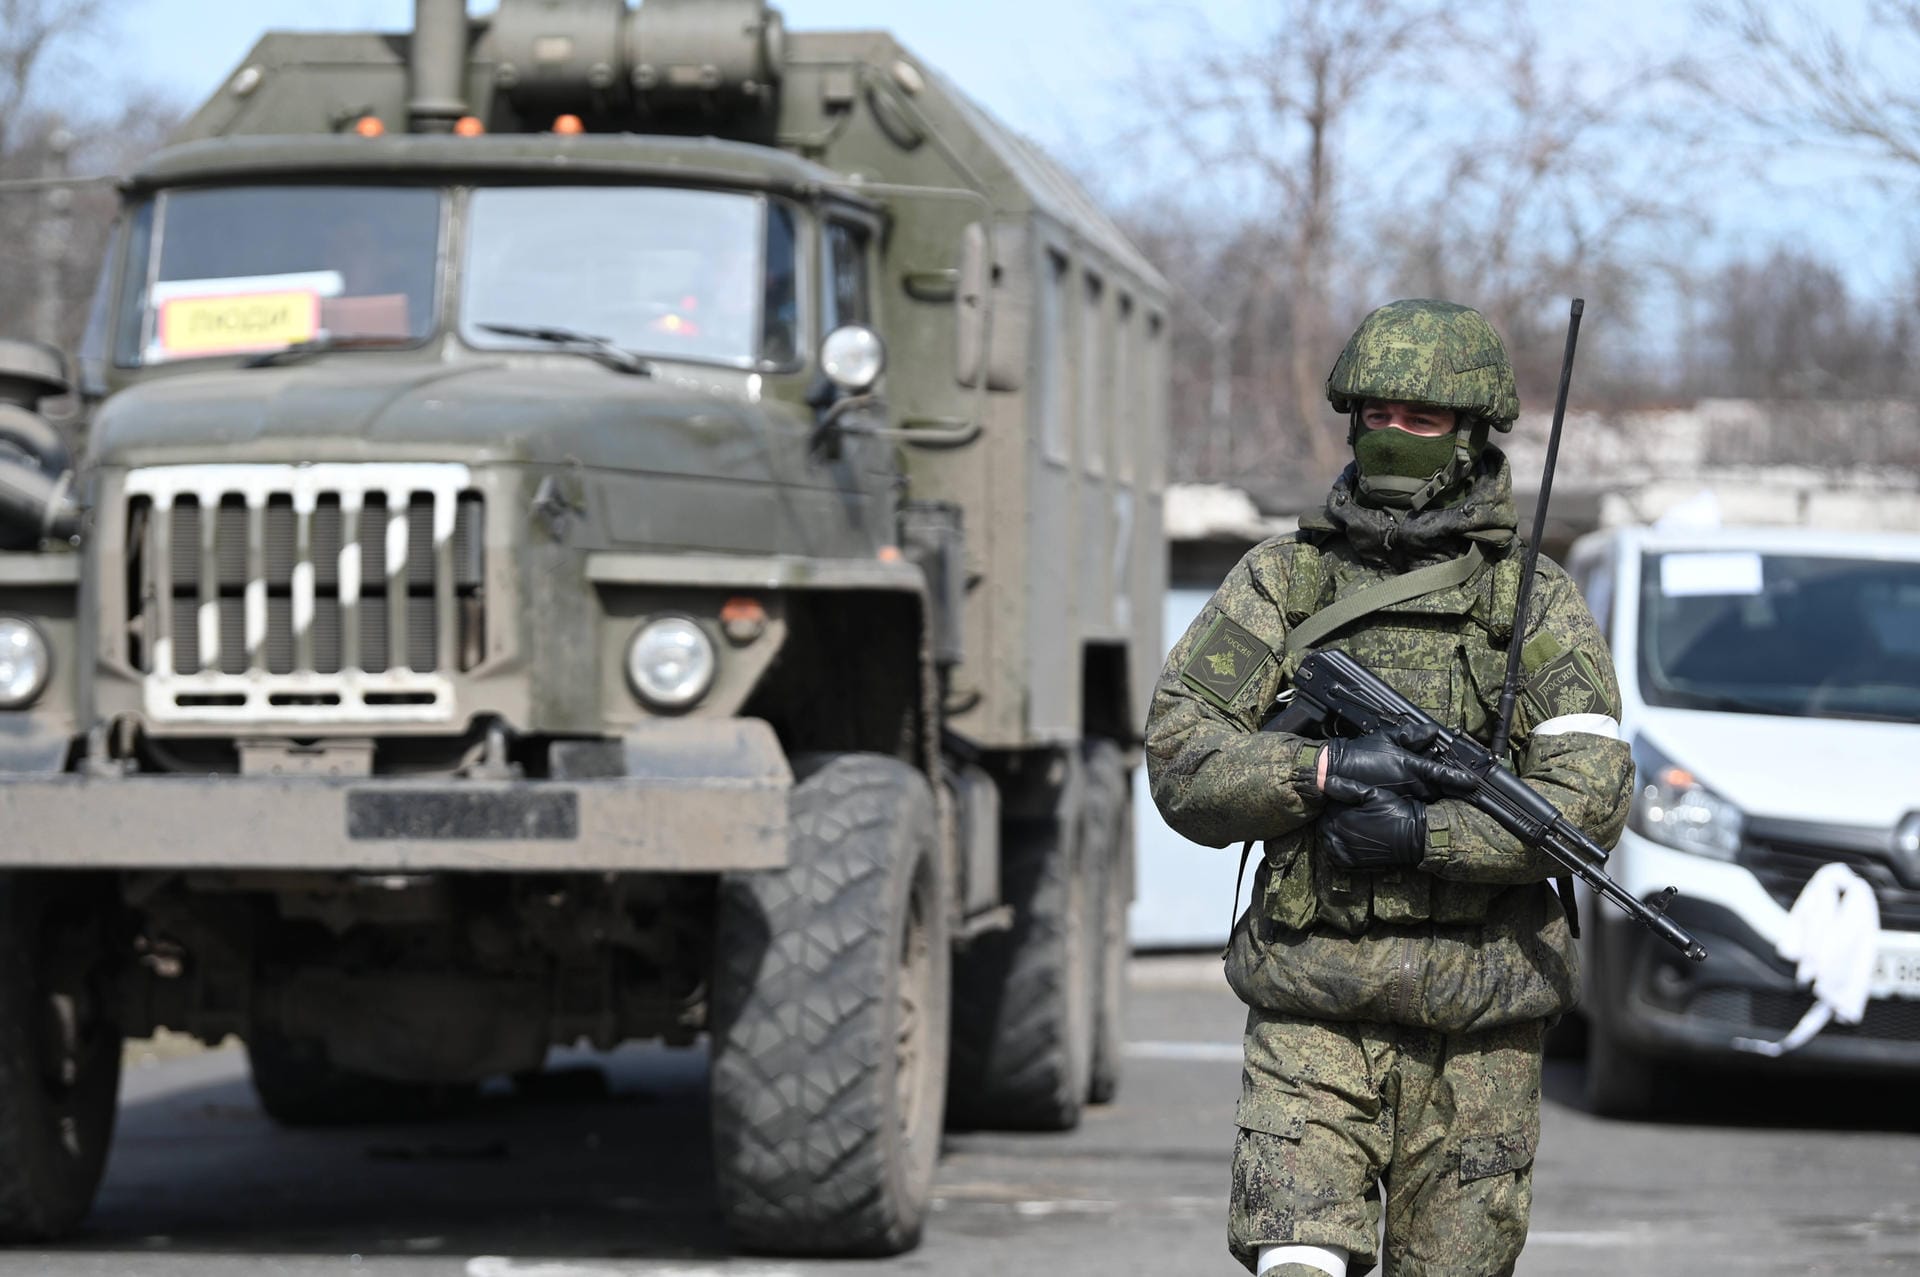 Russland stellt den ukrainischen Streitkräften in der Stadt ein erstes Ultimatum. Diese weigern sich am 21. März jedoch, sich zu ergeben.